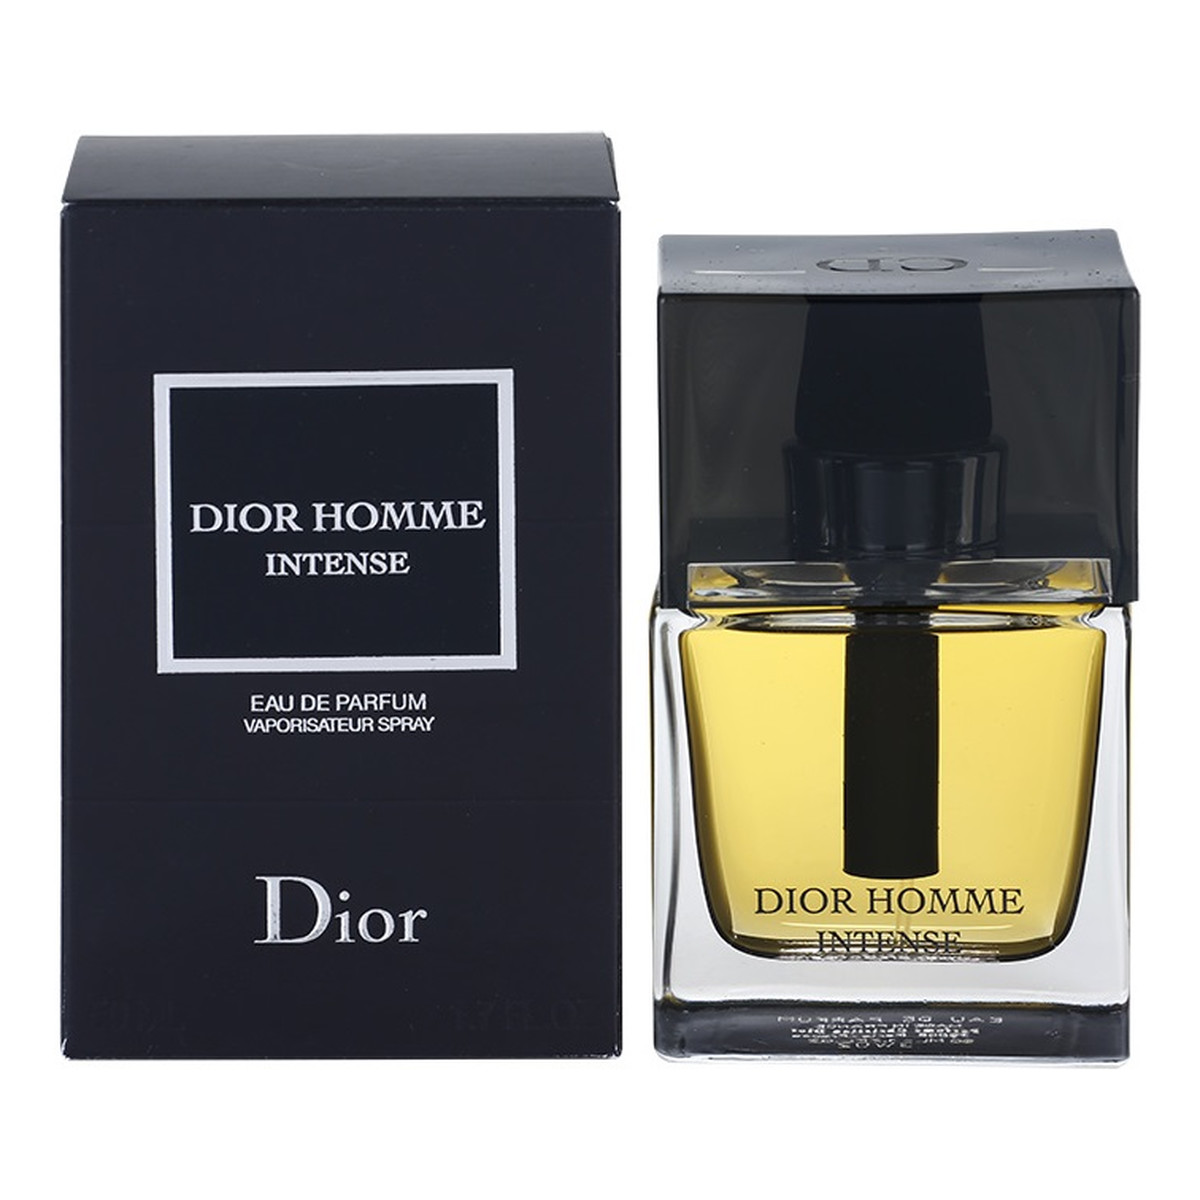 Dior Homme Intense woda perfumowana dla mężczyzn 50ml